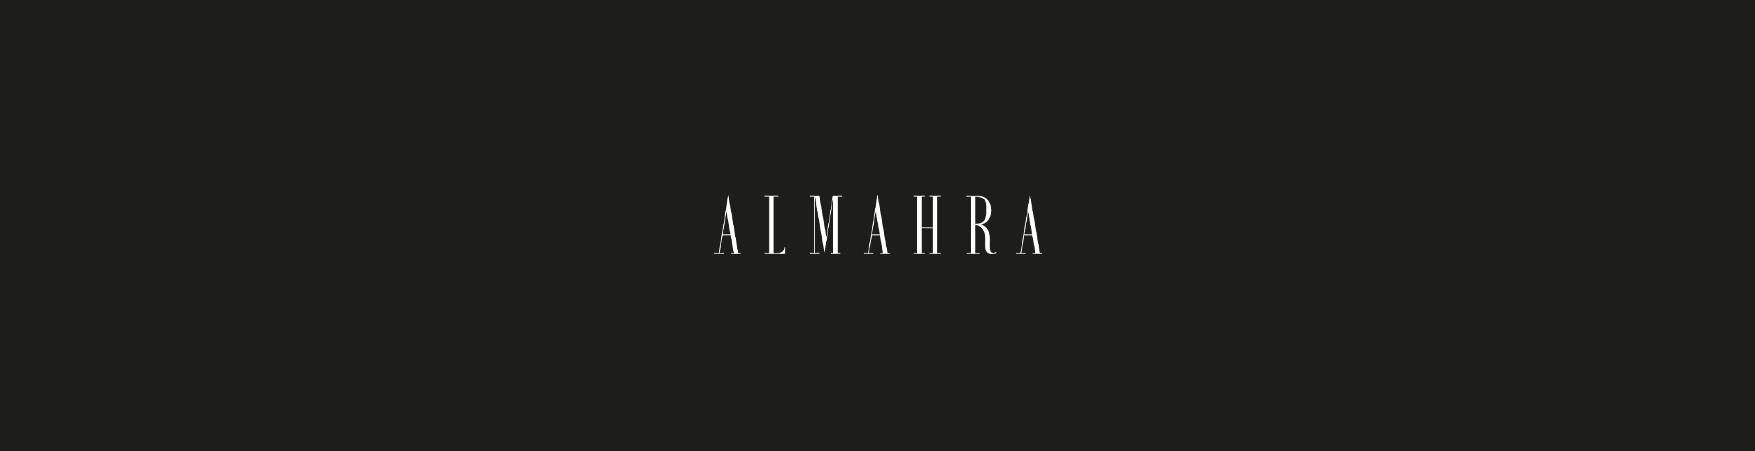 AlMahra